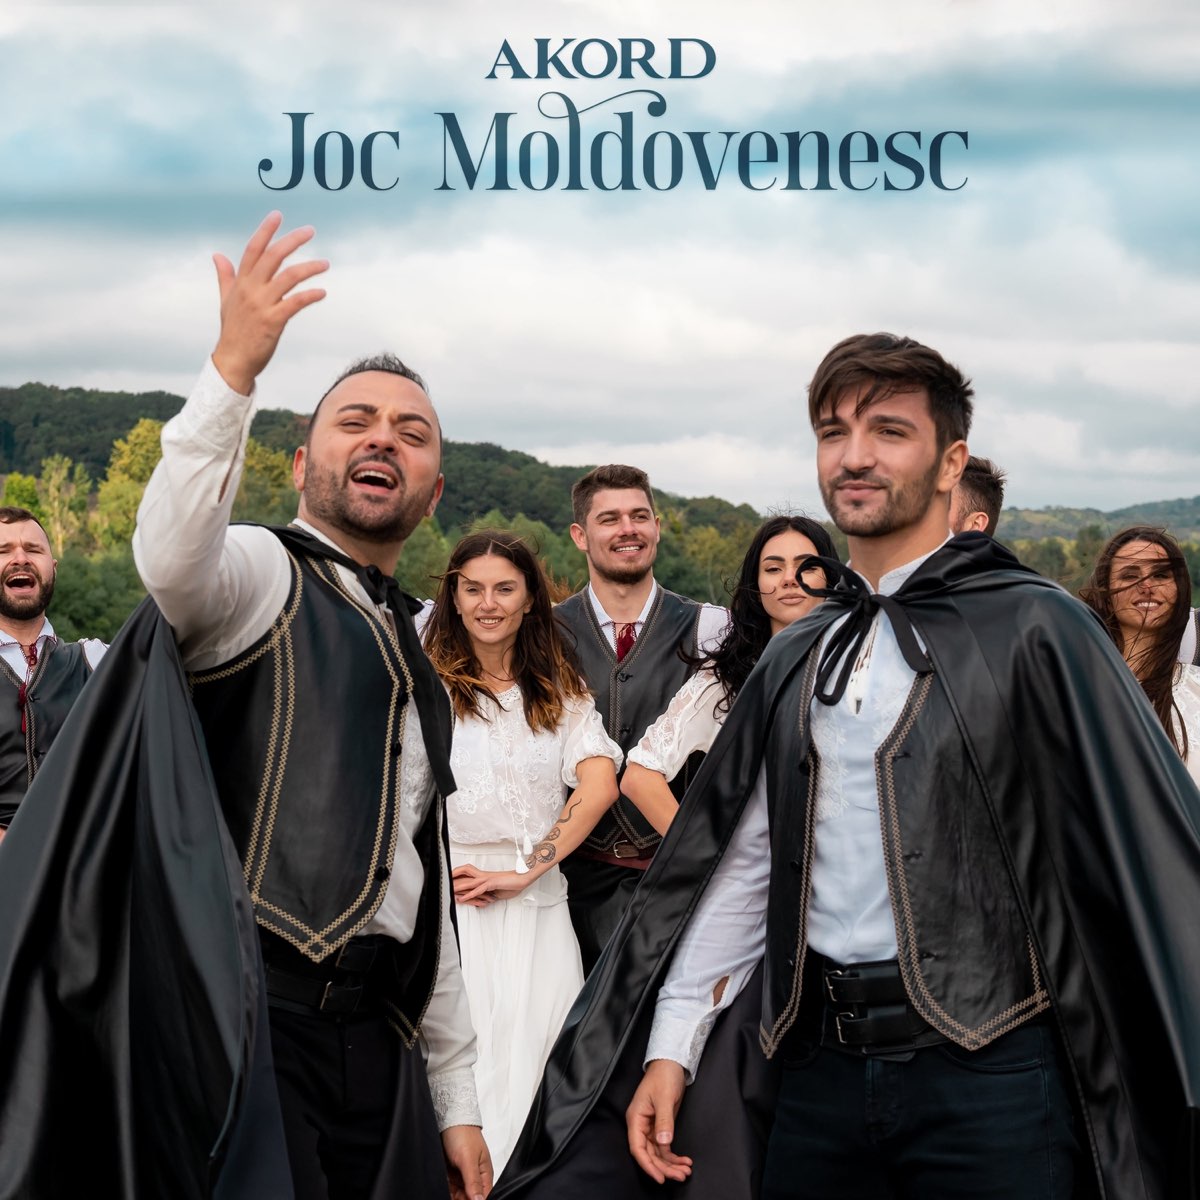 Joc Moldovenesc - Single by Akord on Apple Music